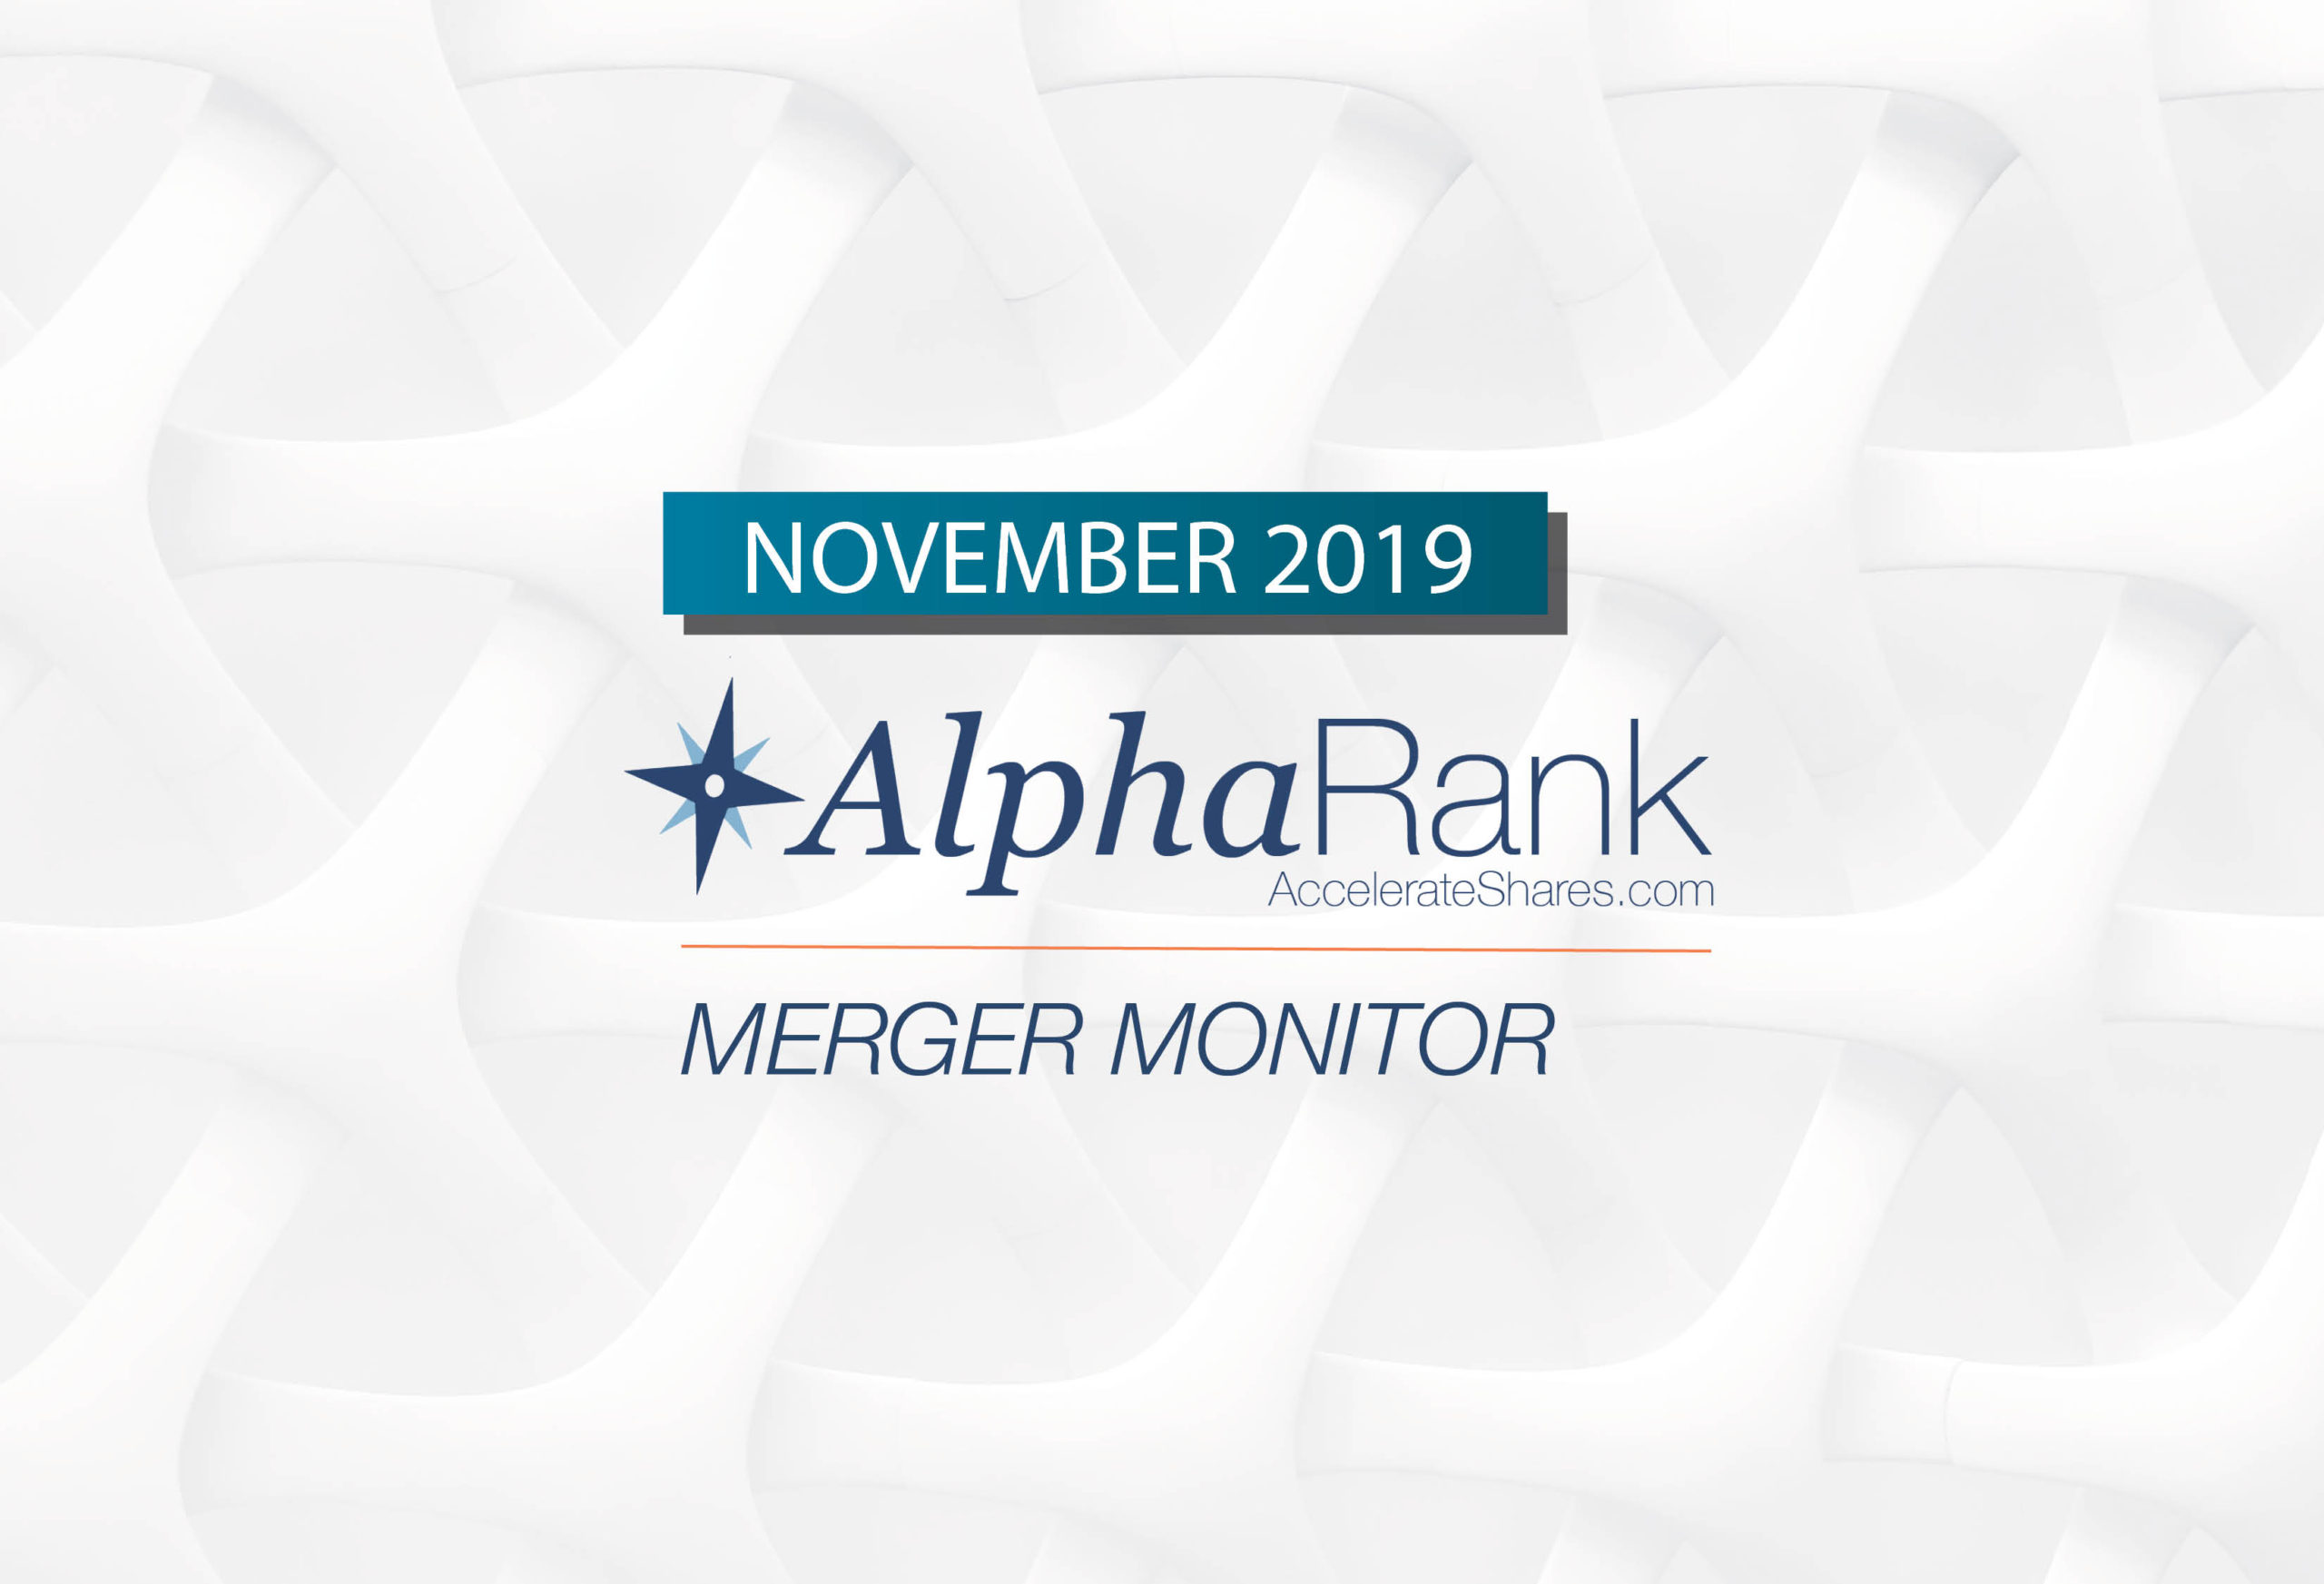 AlphaRank Merger Monitor—November 2019